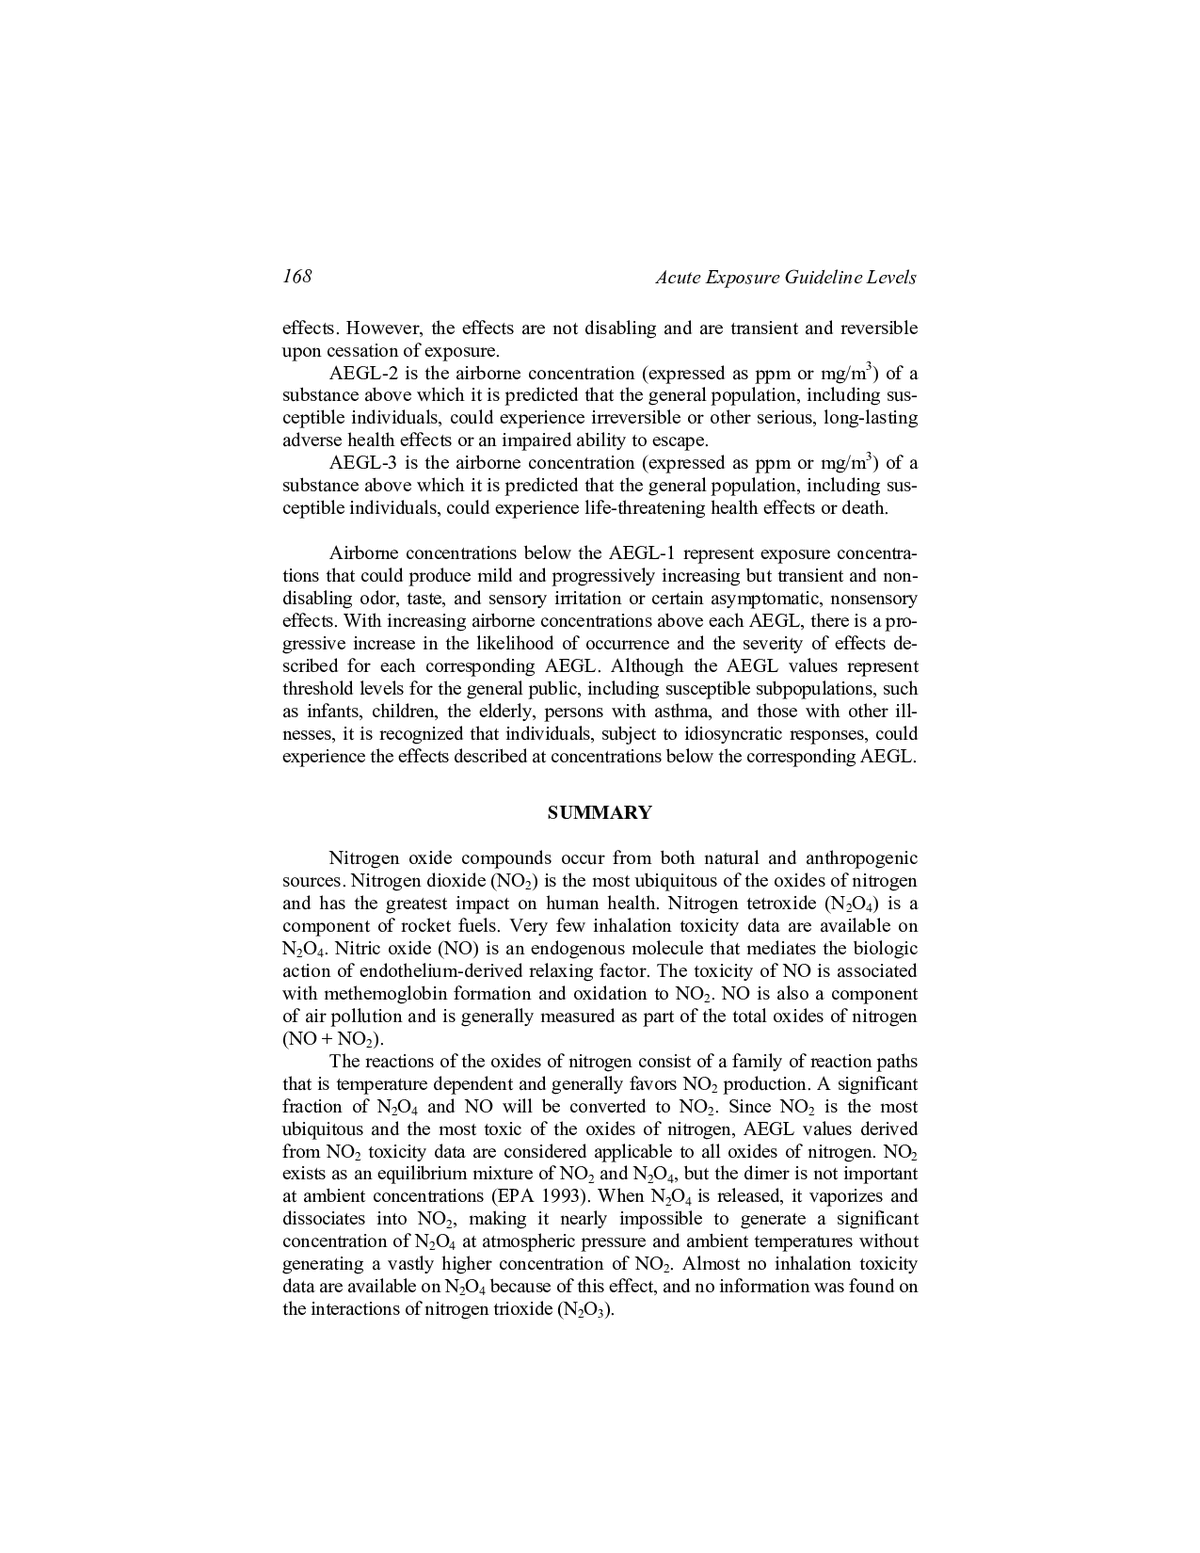 BR J Pain v2 - n2 - Ing PDF